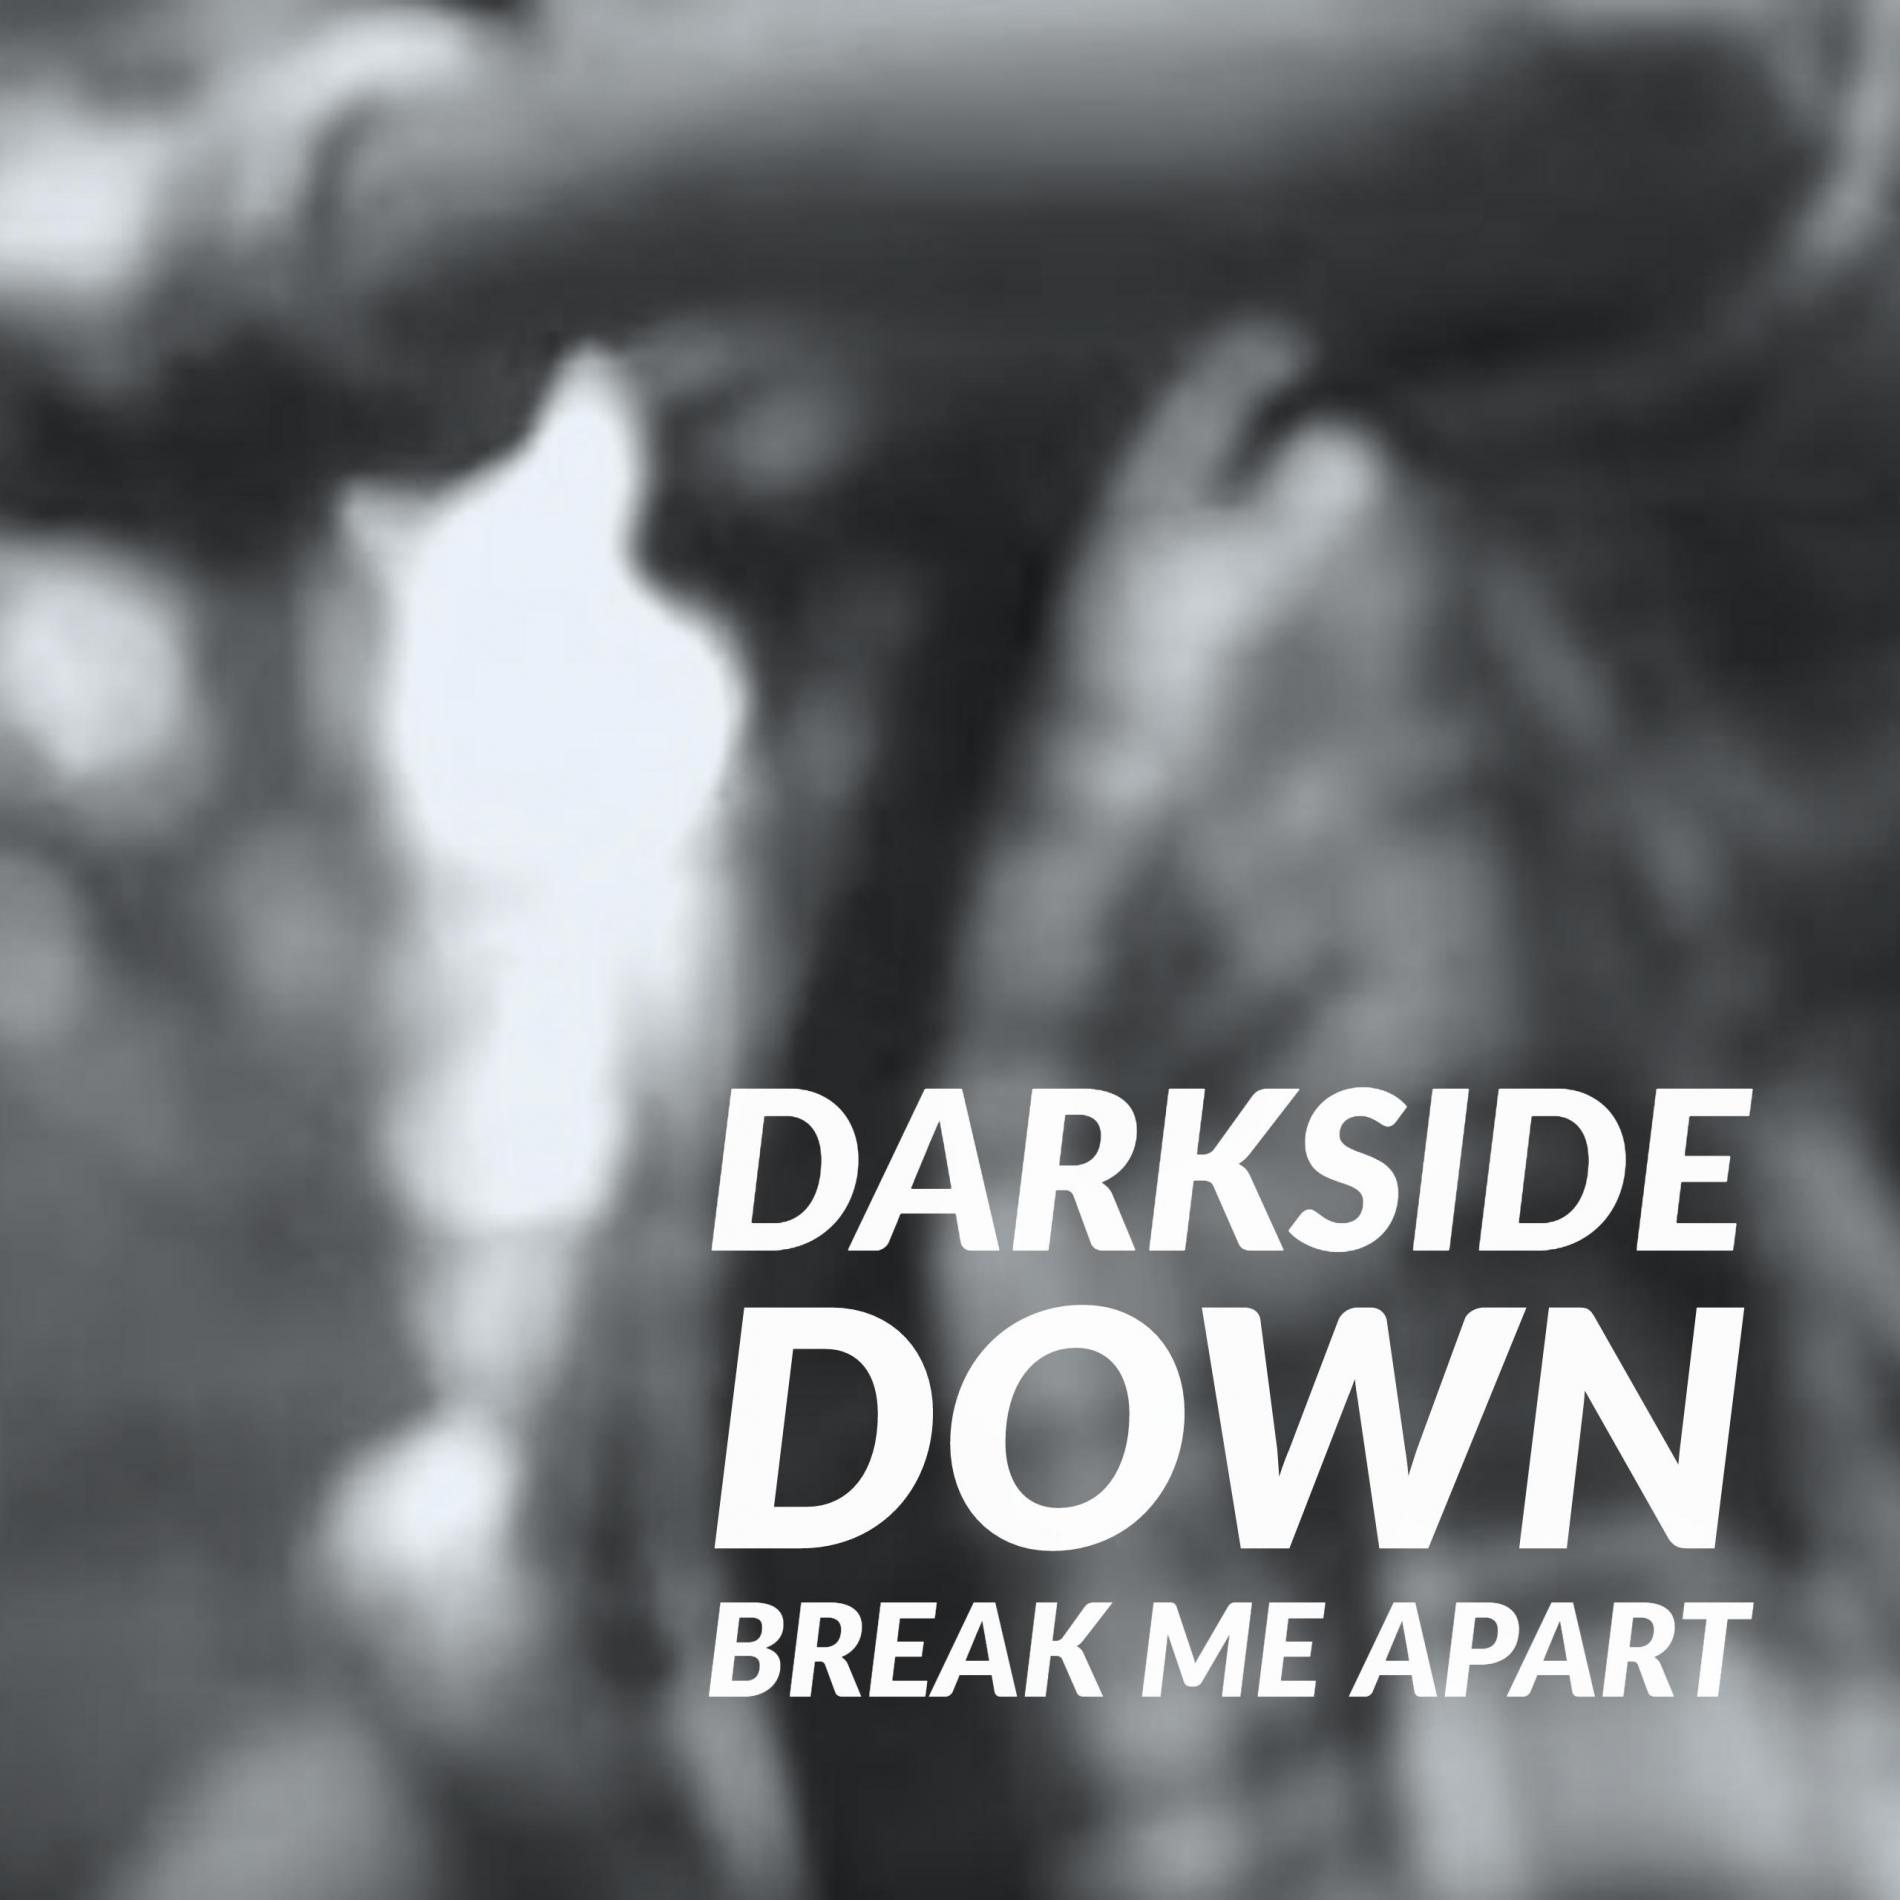 DarkSide Down – Break Me Apart [OFFICIAL VIDEO]